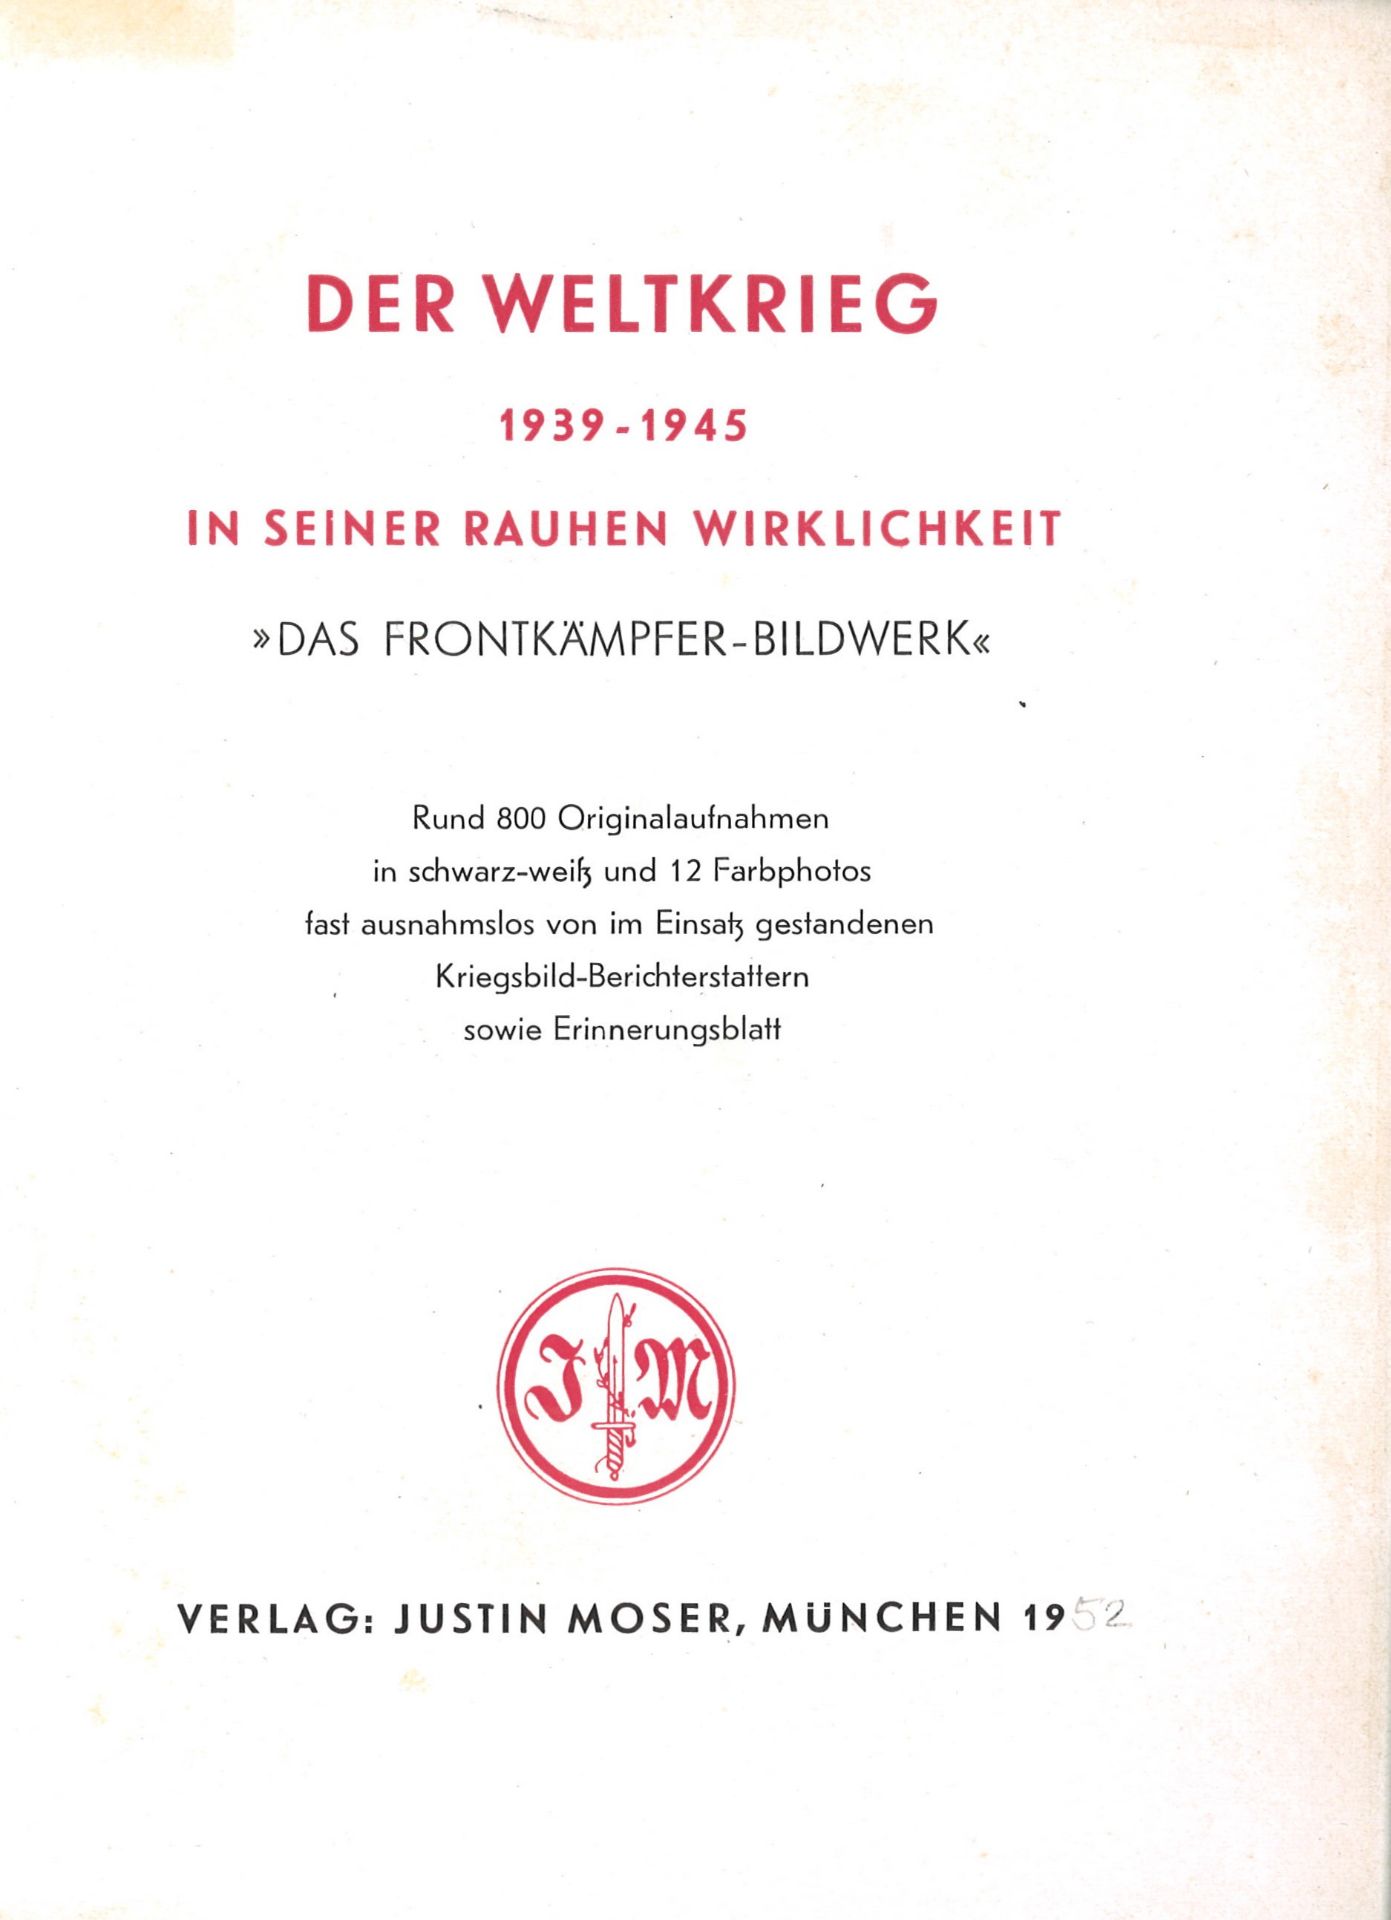 "Der Weltkrieg in seiner rauen Wirklichkeit",1939-1945, das Frontkämpfer-Bildwerk, rund 800